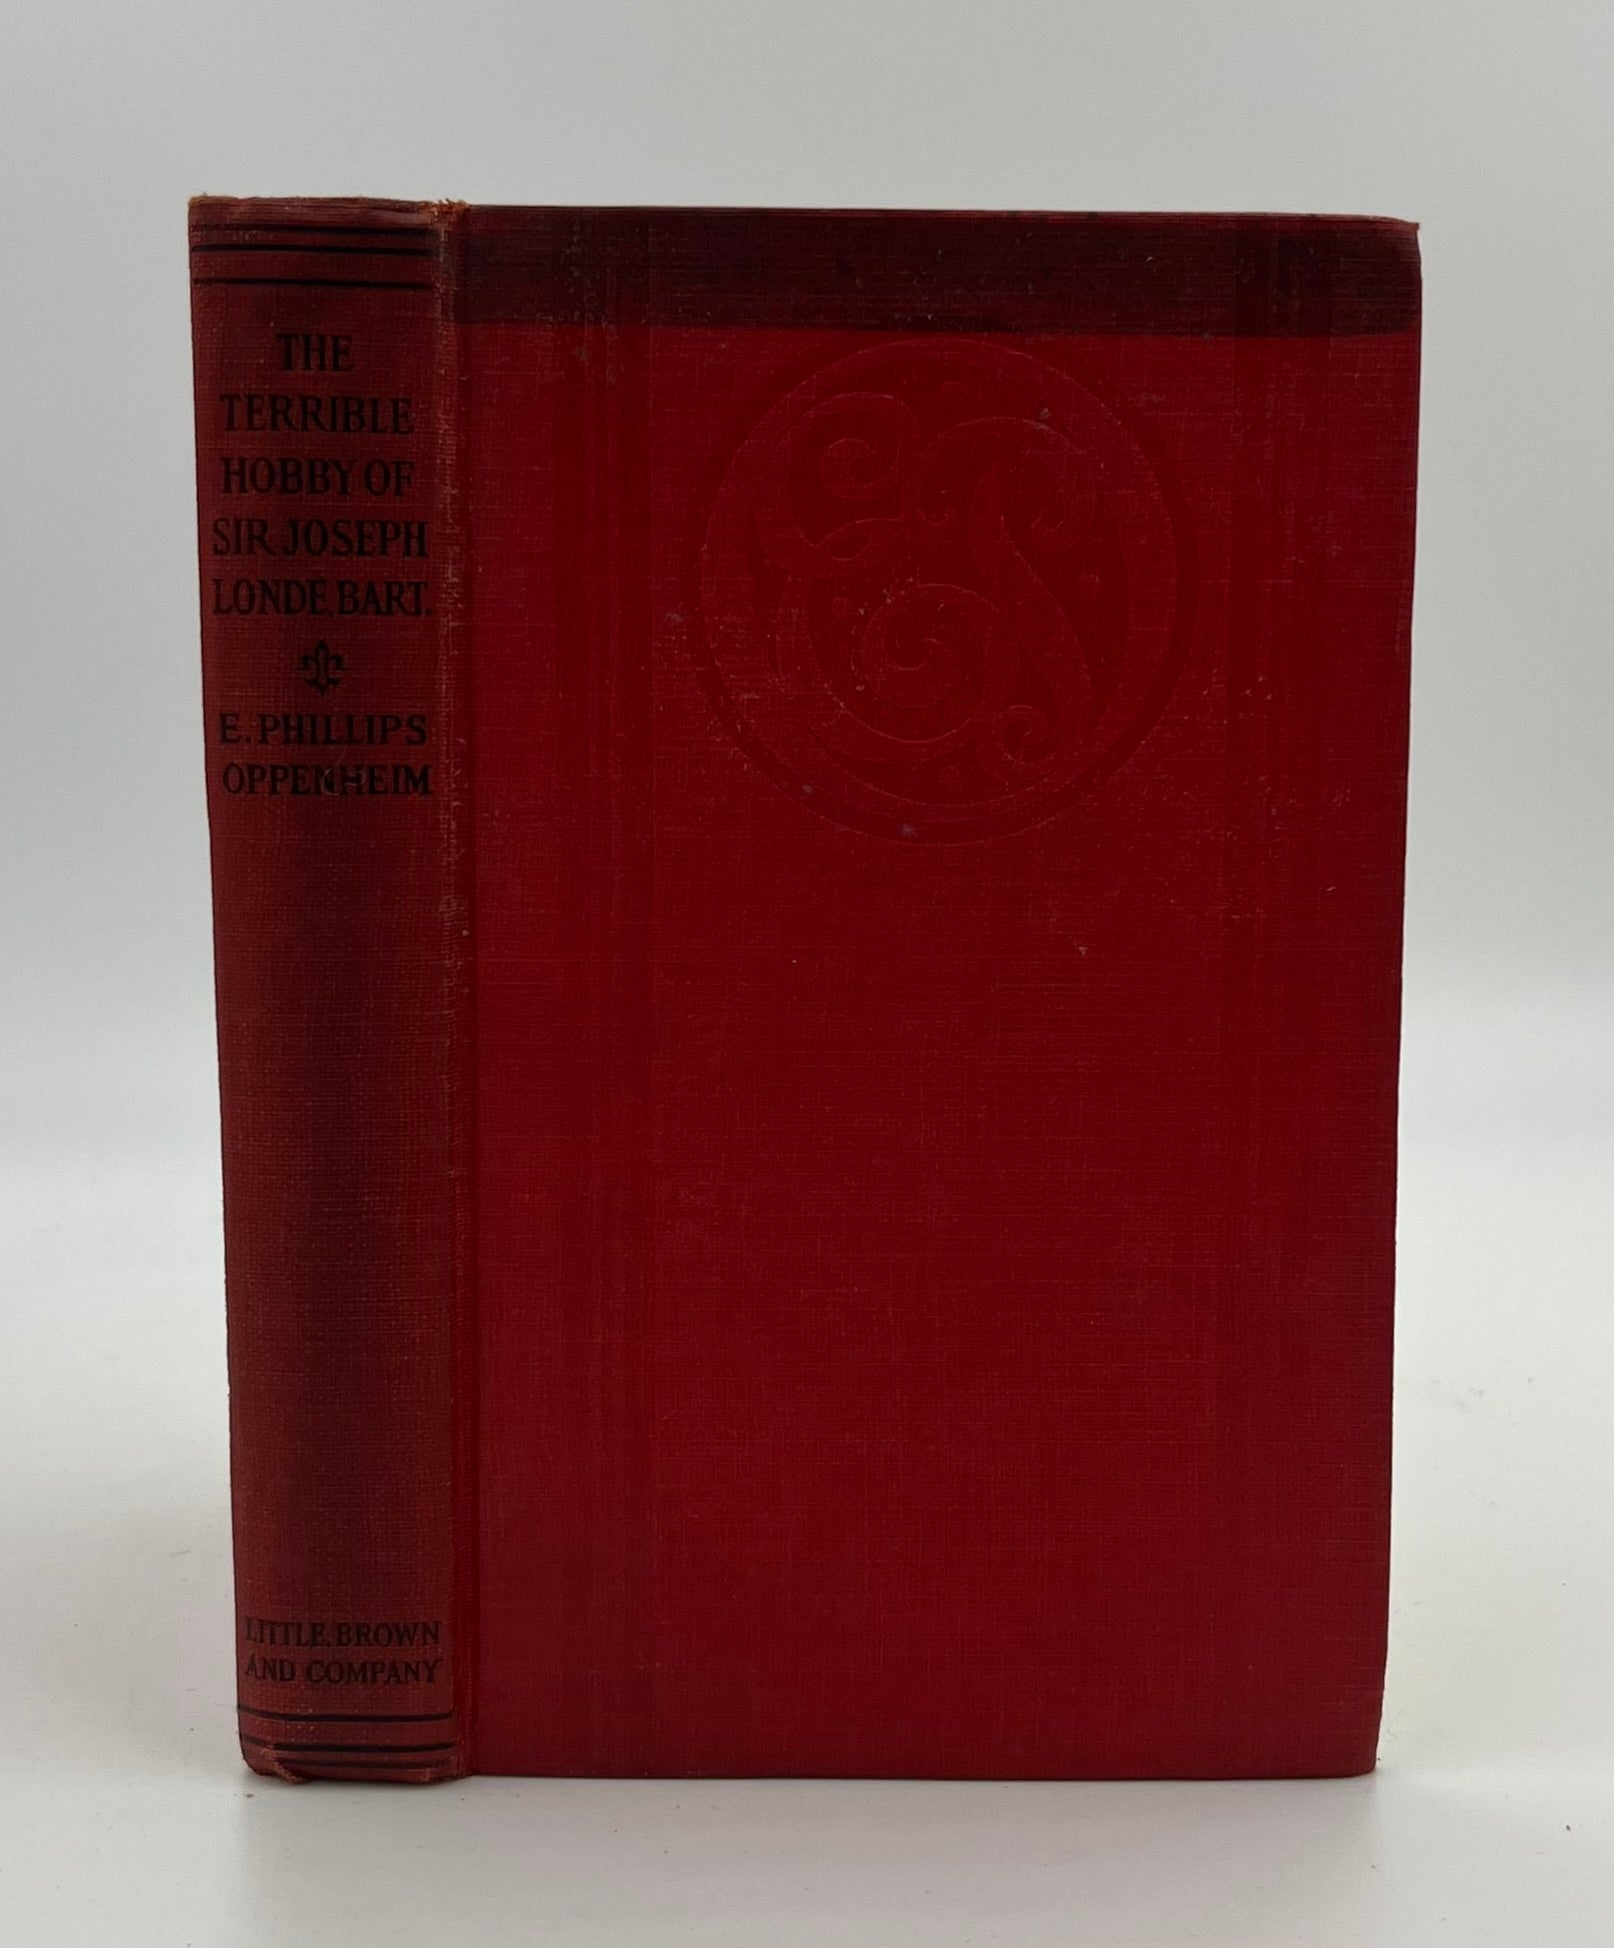 Book #160472 The Terrible Hobby of Sir Joseph Londe, Bart. E. Phillips Oppenheim.